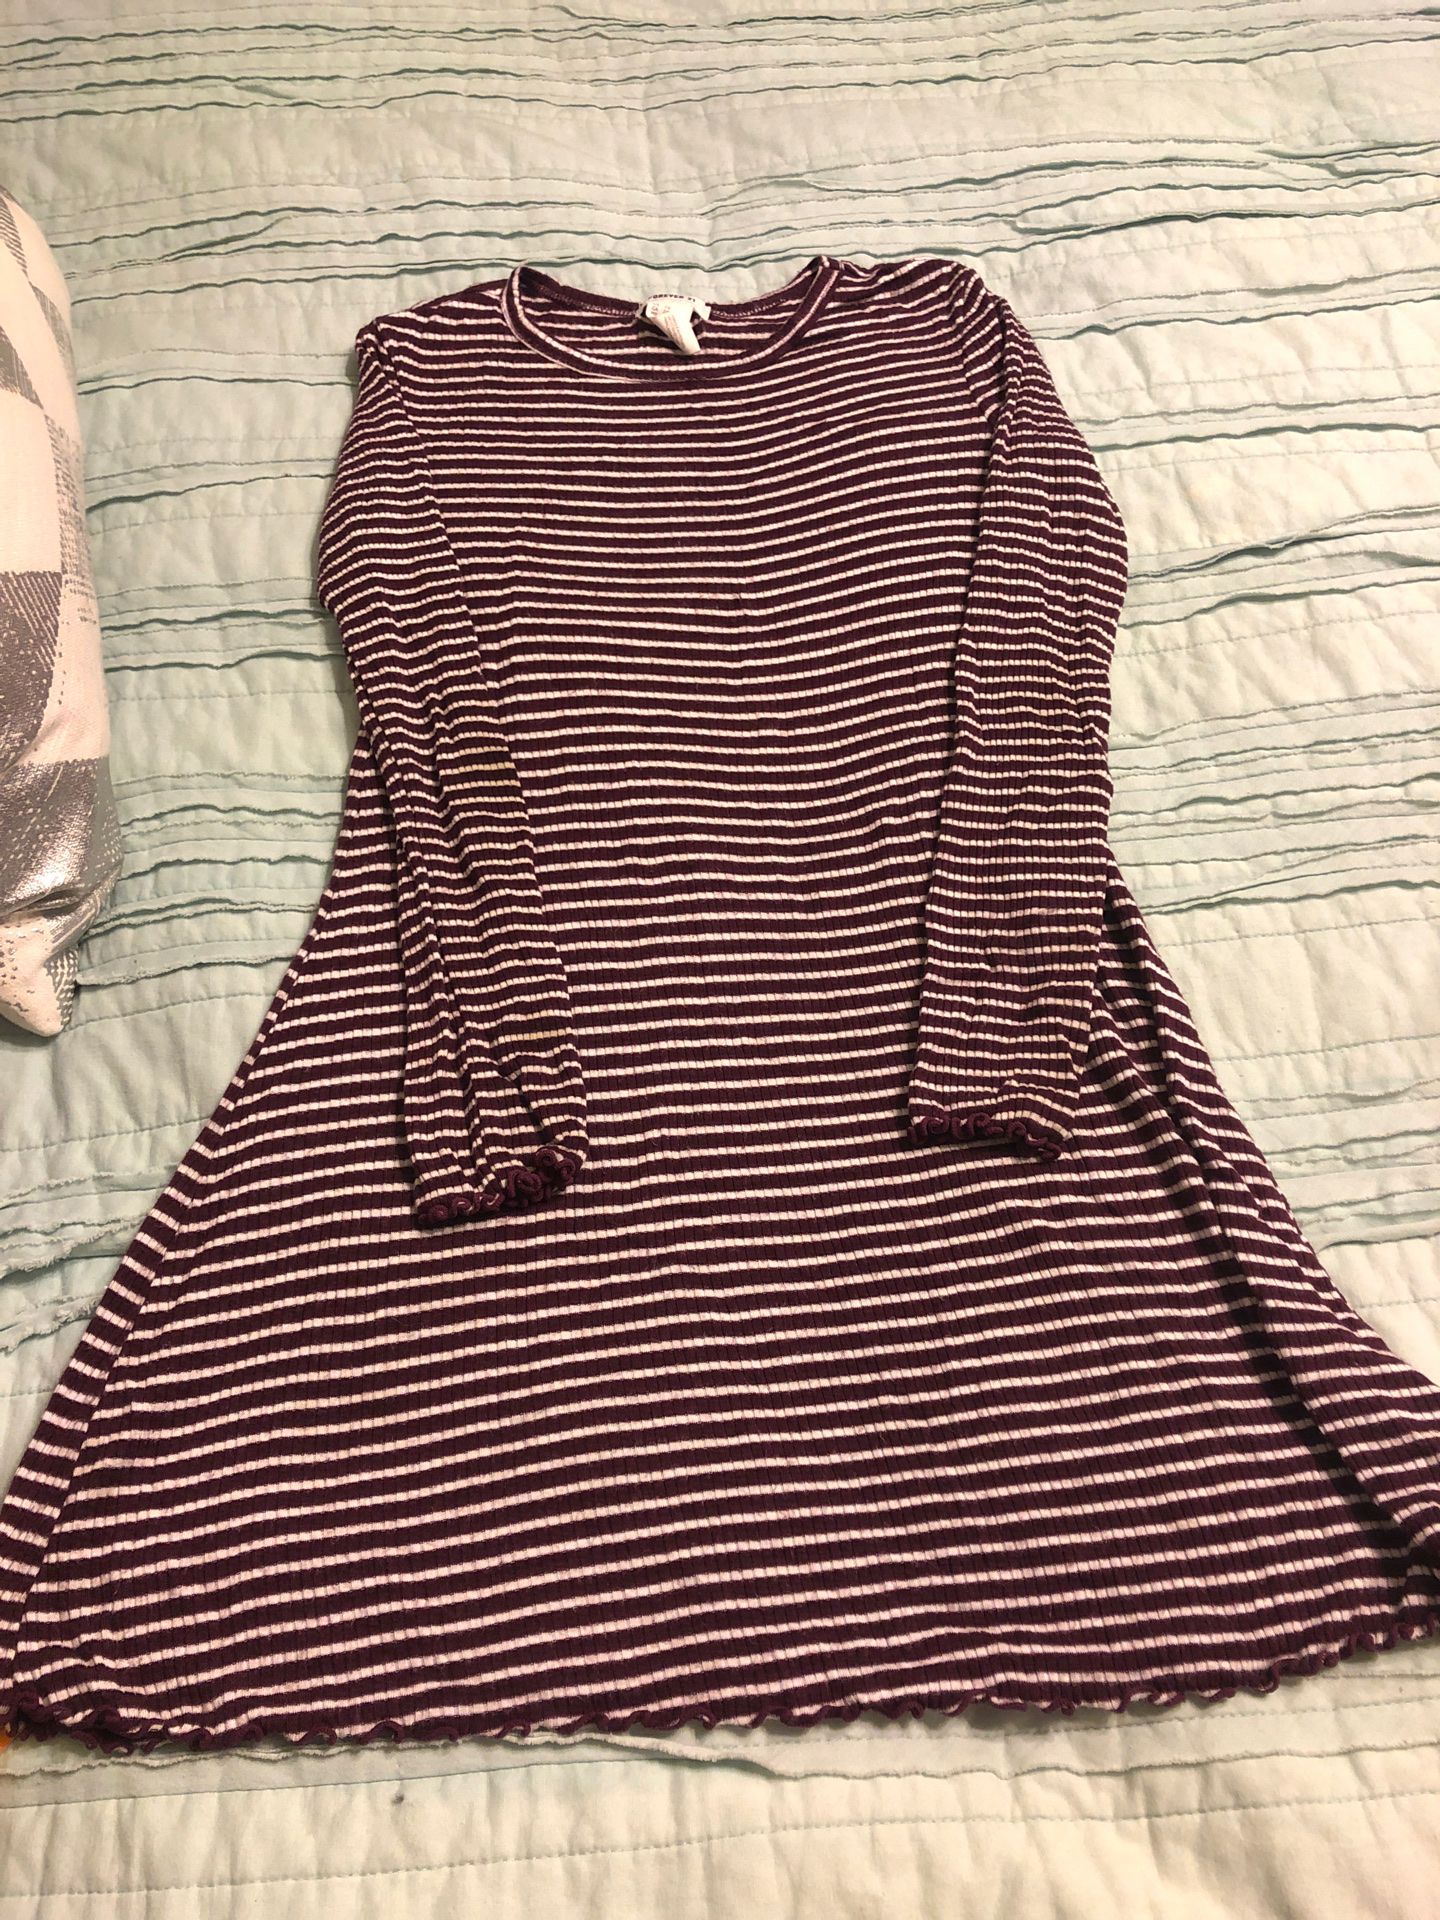 Girls long sleeve striped dress sz 7-8 (forever 21)